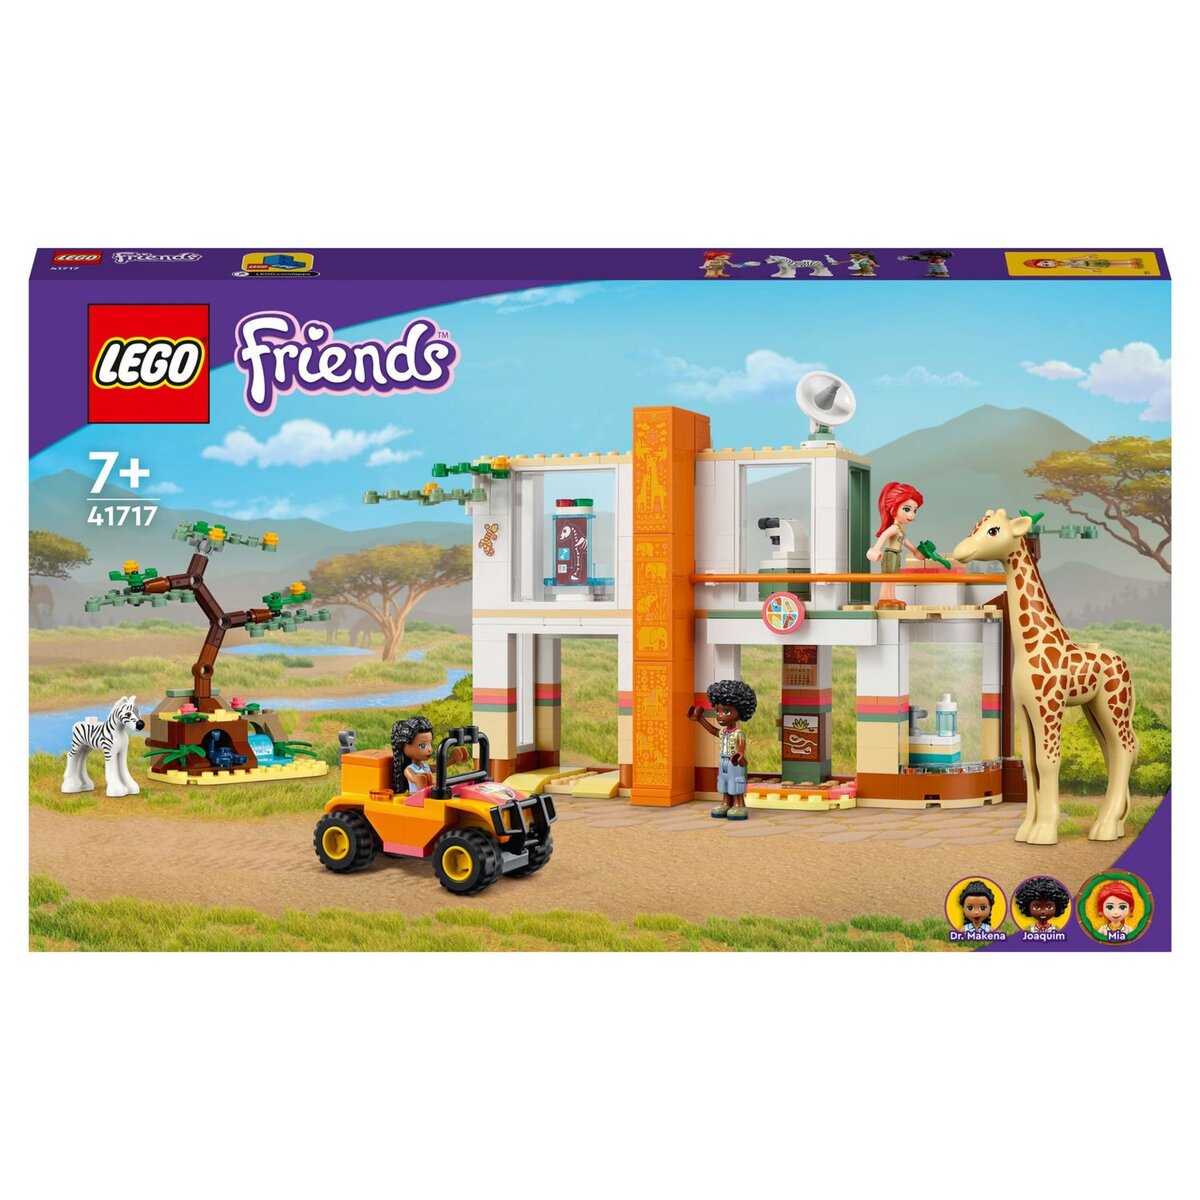 Des Lego Friends bientôt commercialisés